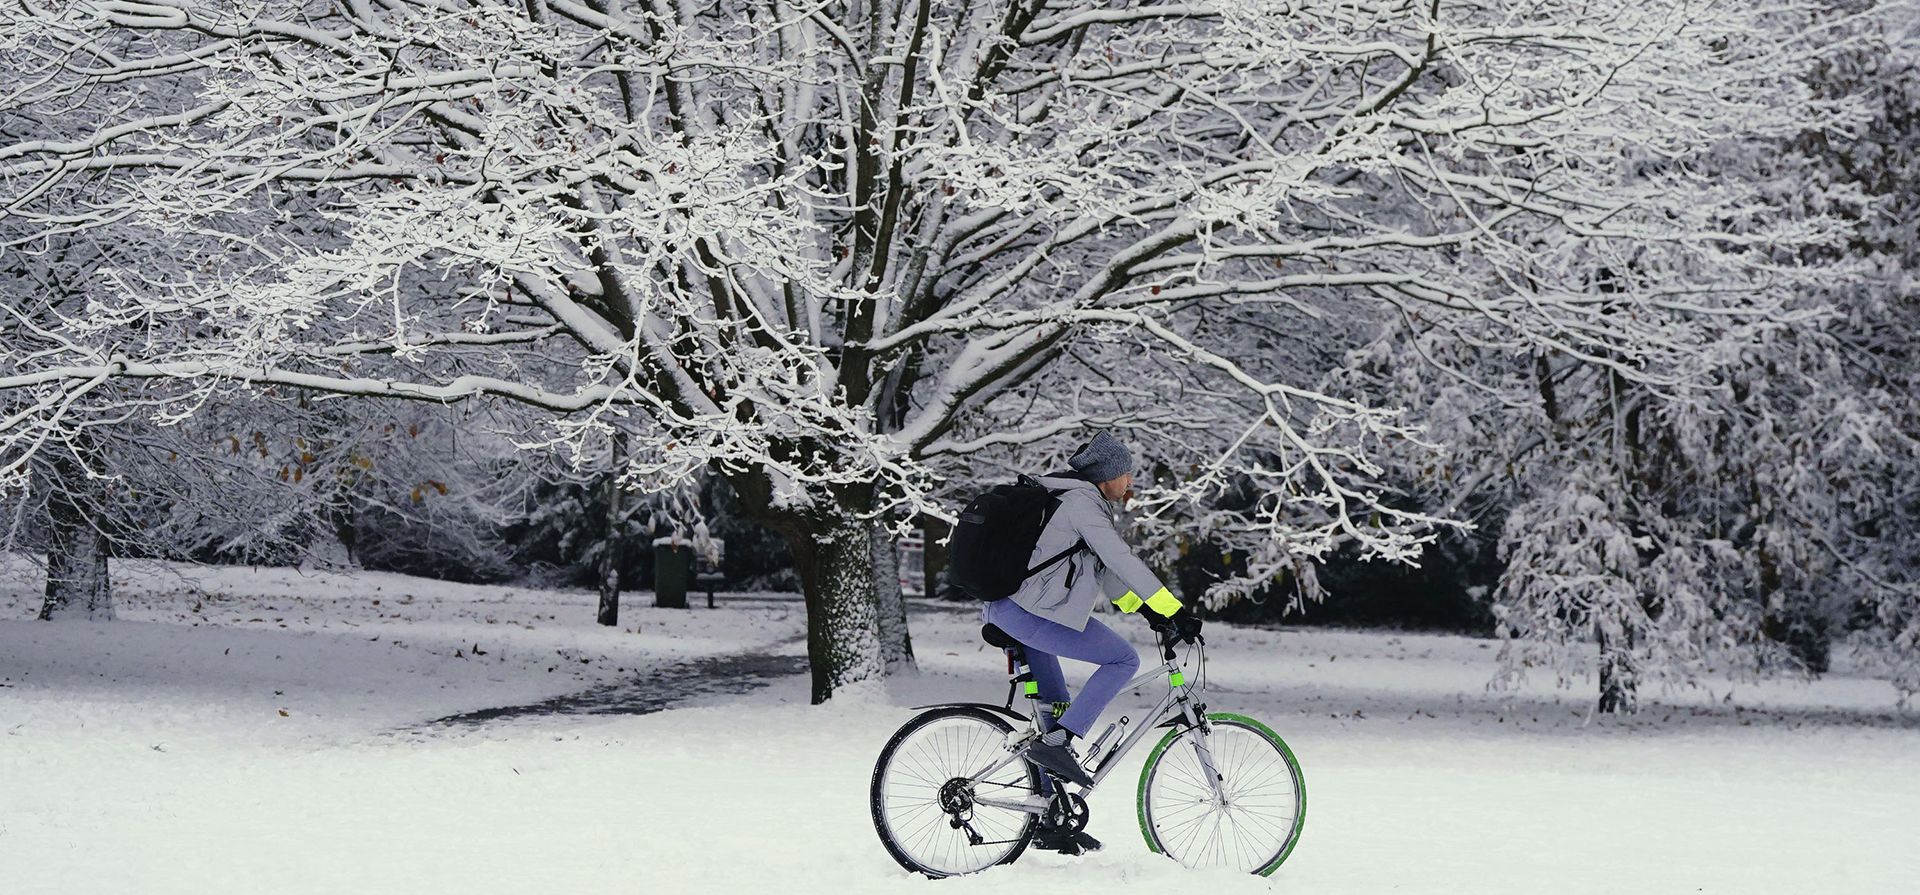 Una persona anda en bicicleta a través de la nieve en Greenwich Park, Londres, el lunes 12 de diciembre de 2022. La nieve y el hielo han barrido partes del Reino Unido, con condiciones invernales frías que continuarán durante días.